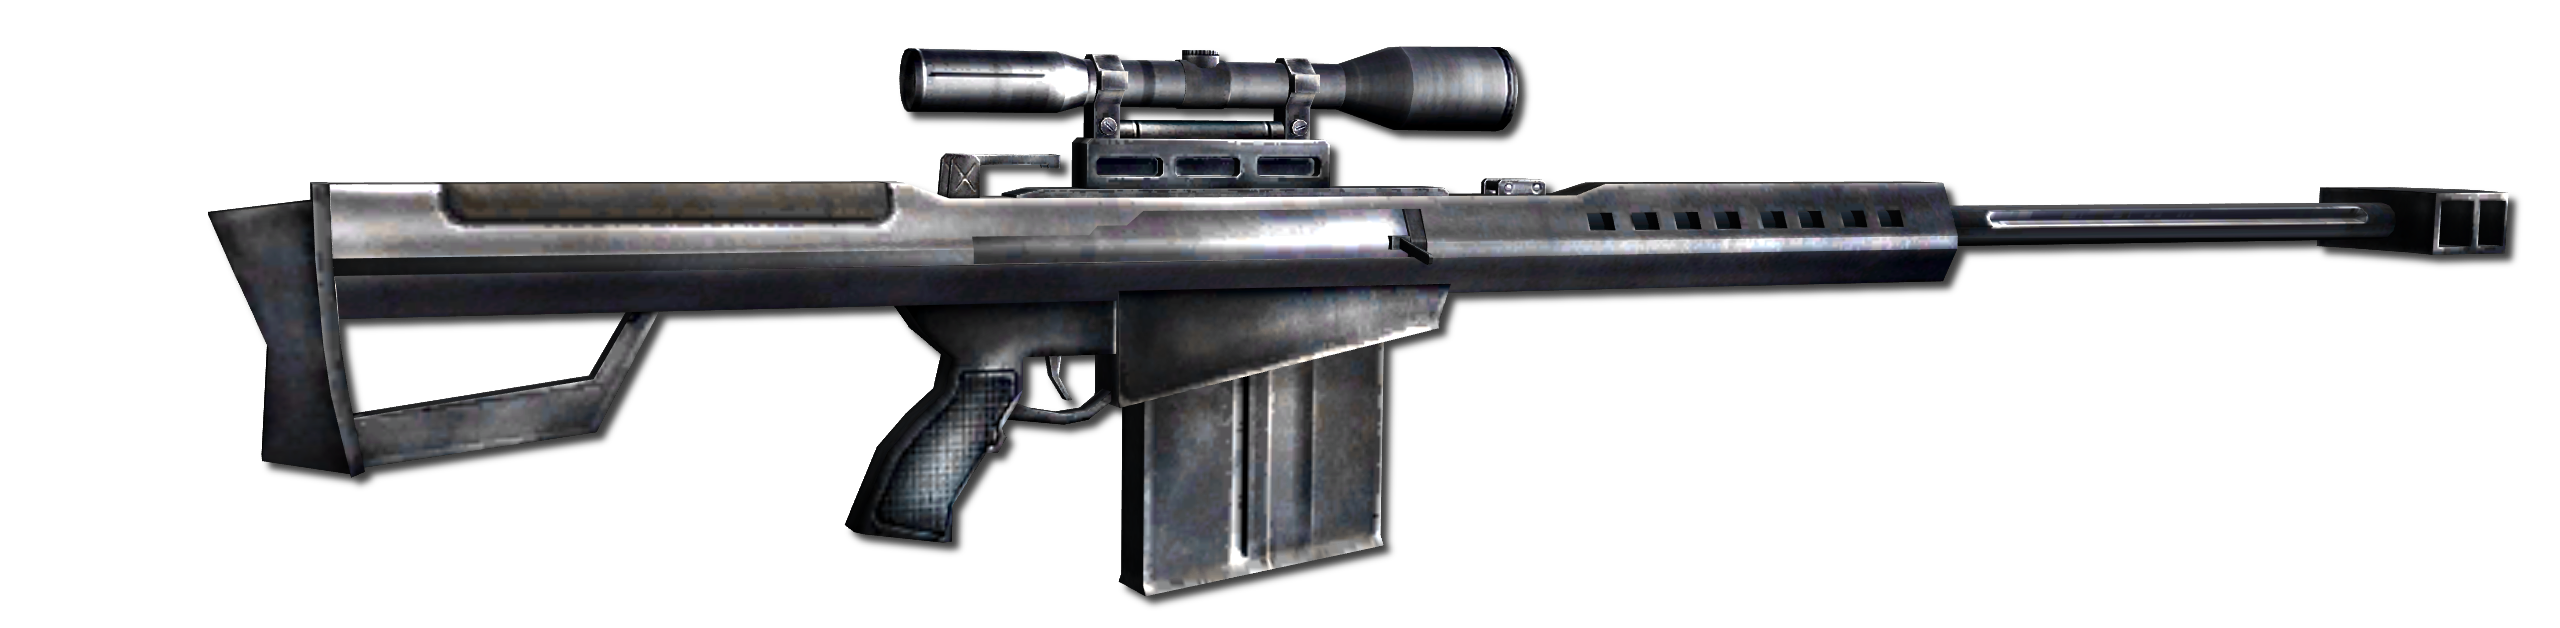 "Barrett M82" from E3 2002 Build.